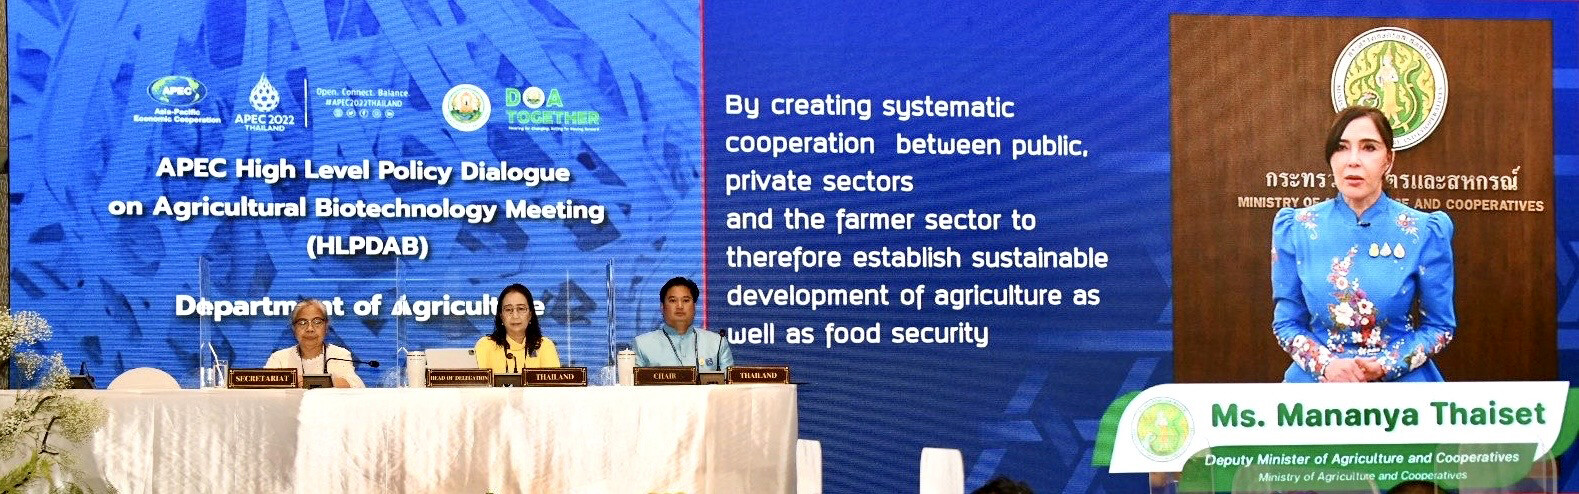 "มนัญญา" เปิดประชุม APEC ระดับสูงด้านเทคโนโลยีชีวภาพทางการเกษตร